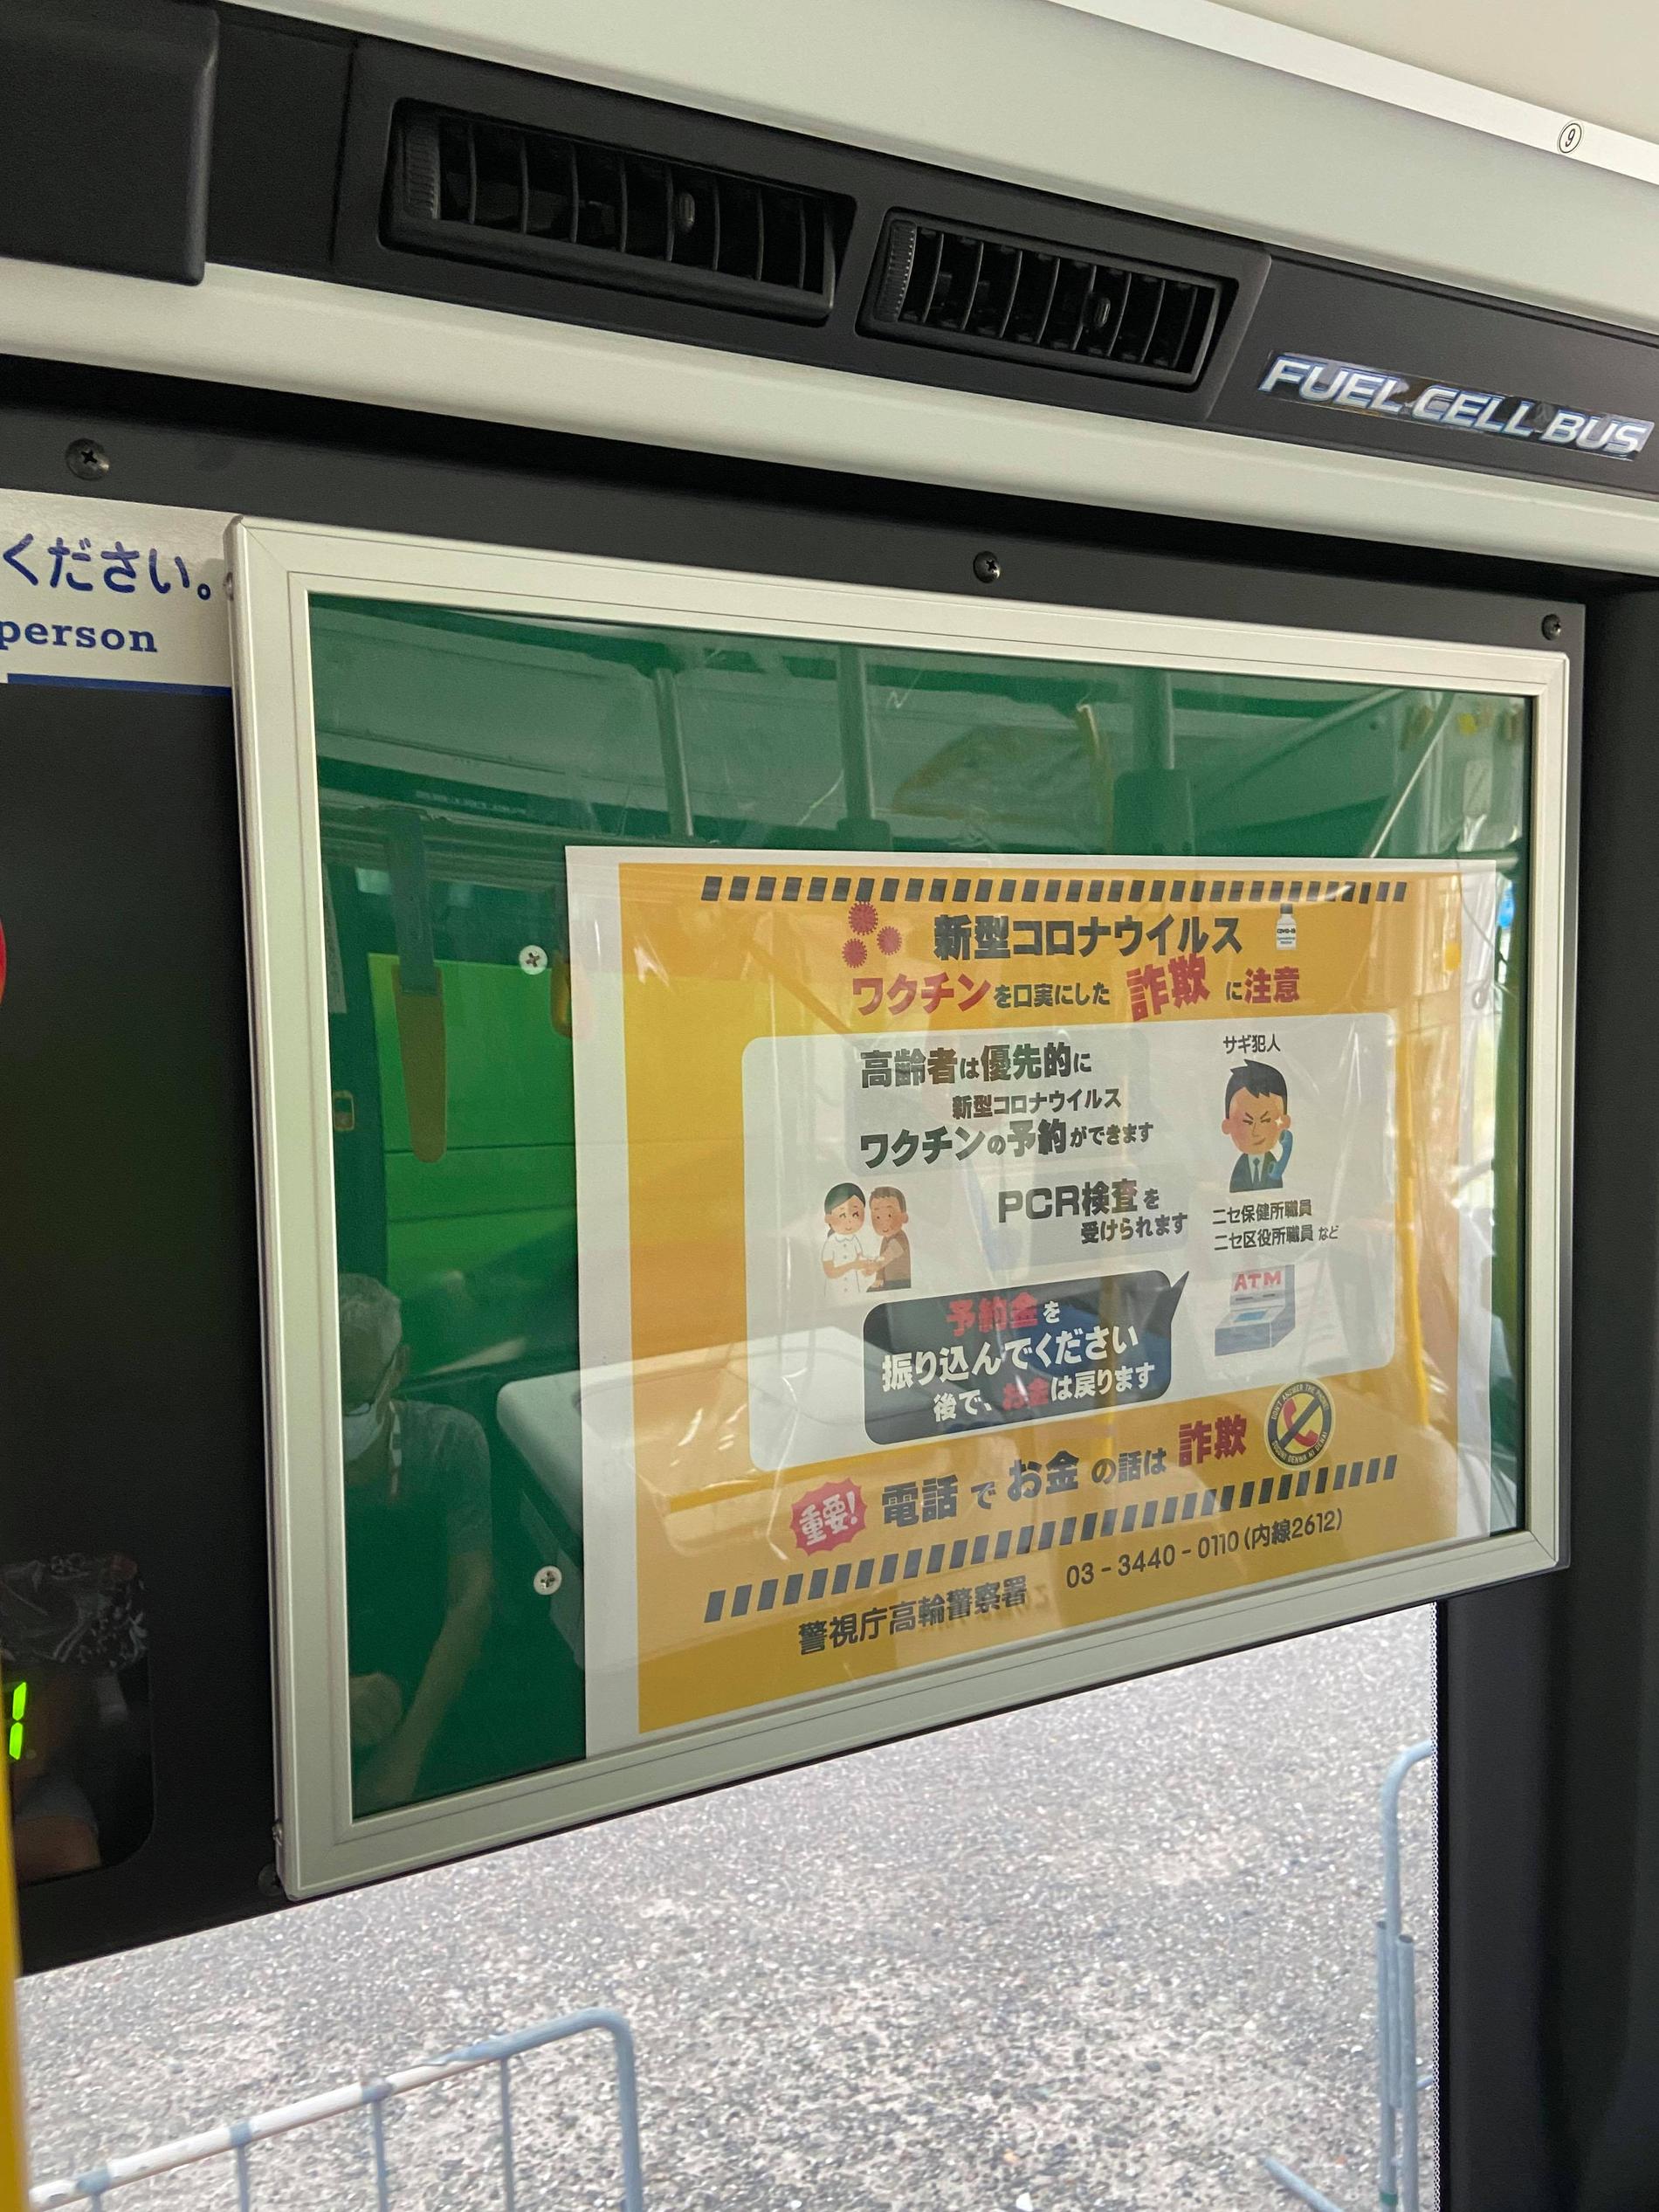 Varning för vaccineringsbedrägeri på en av bussarna i Tokyo. Pedagogiskt förklarat med bilder.